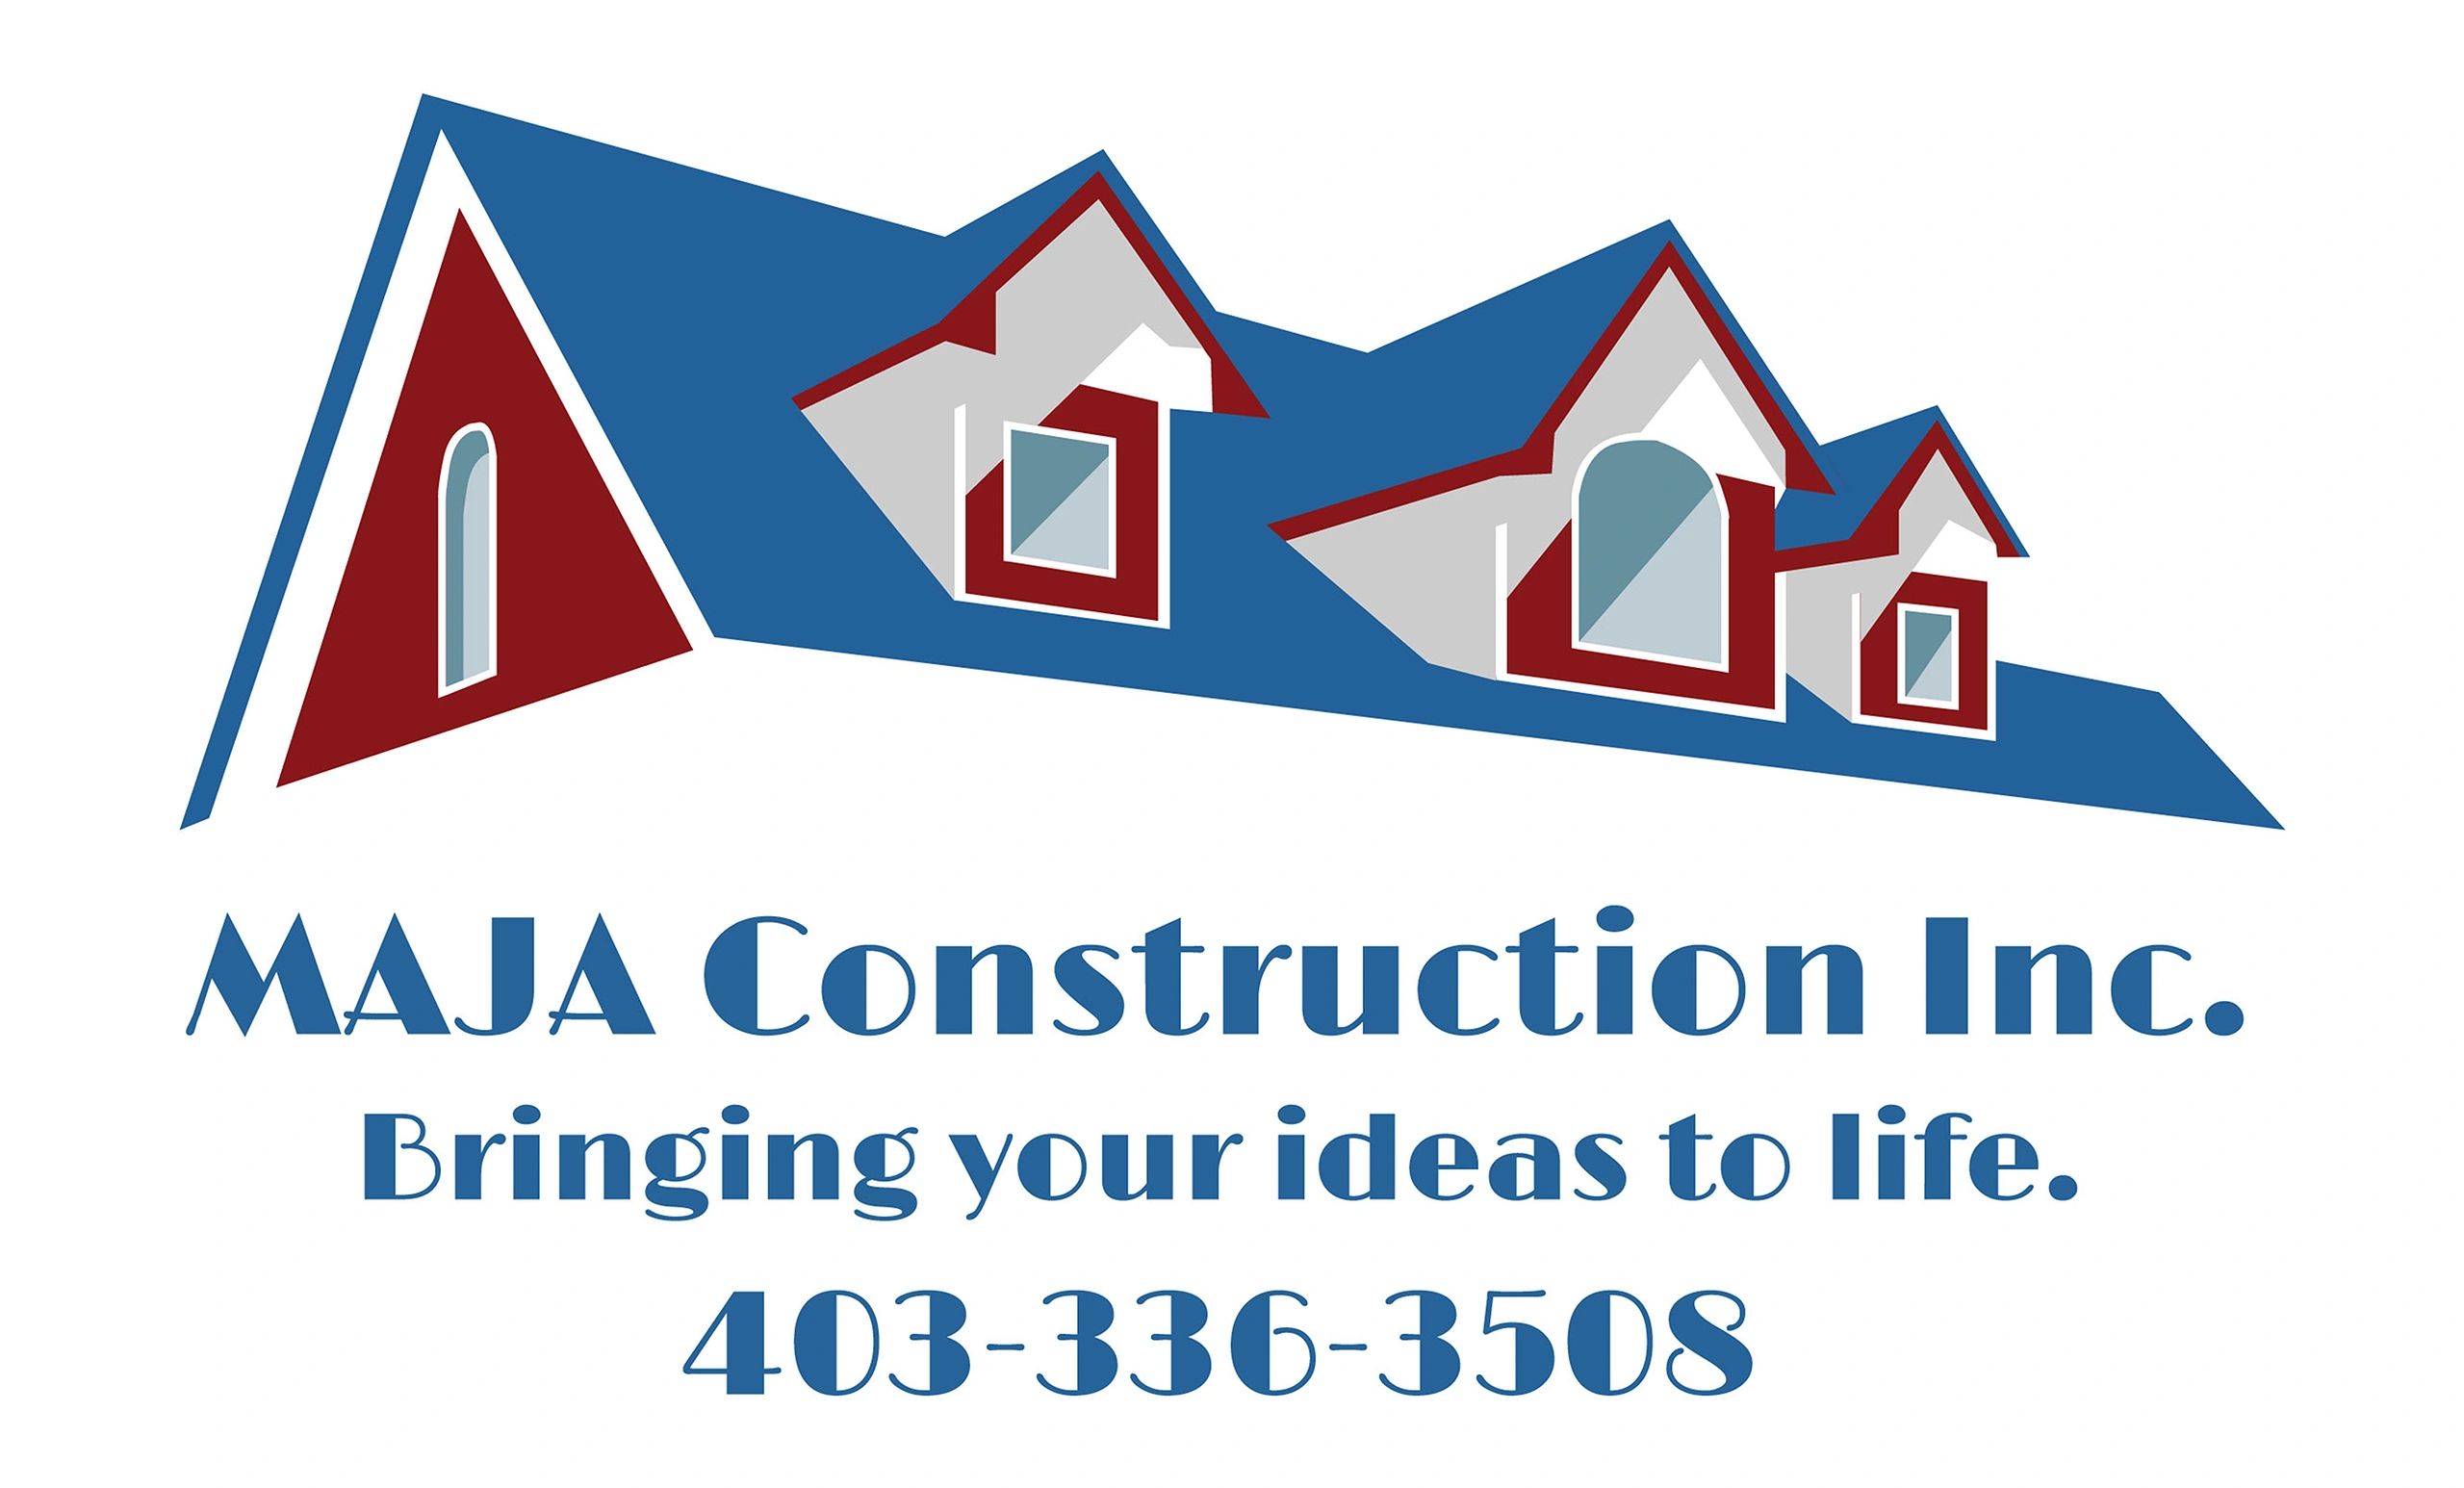 MAJA Construction Inc. logo